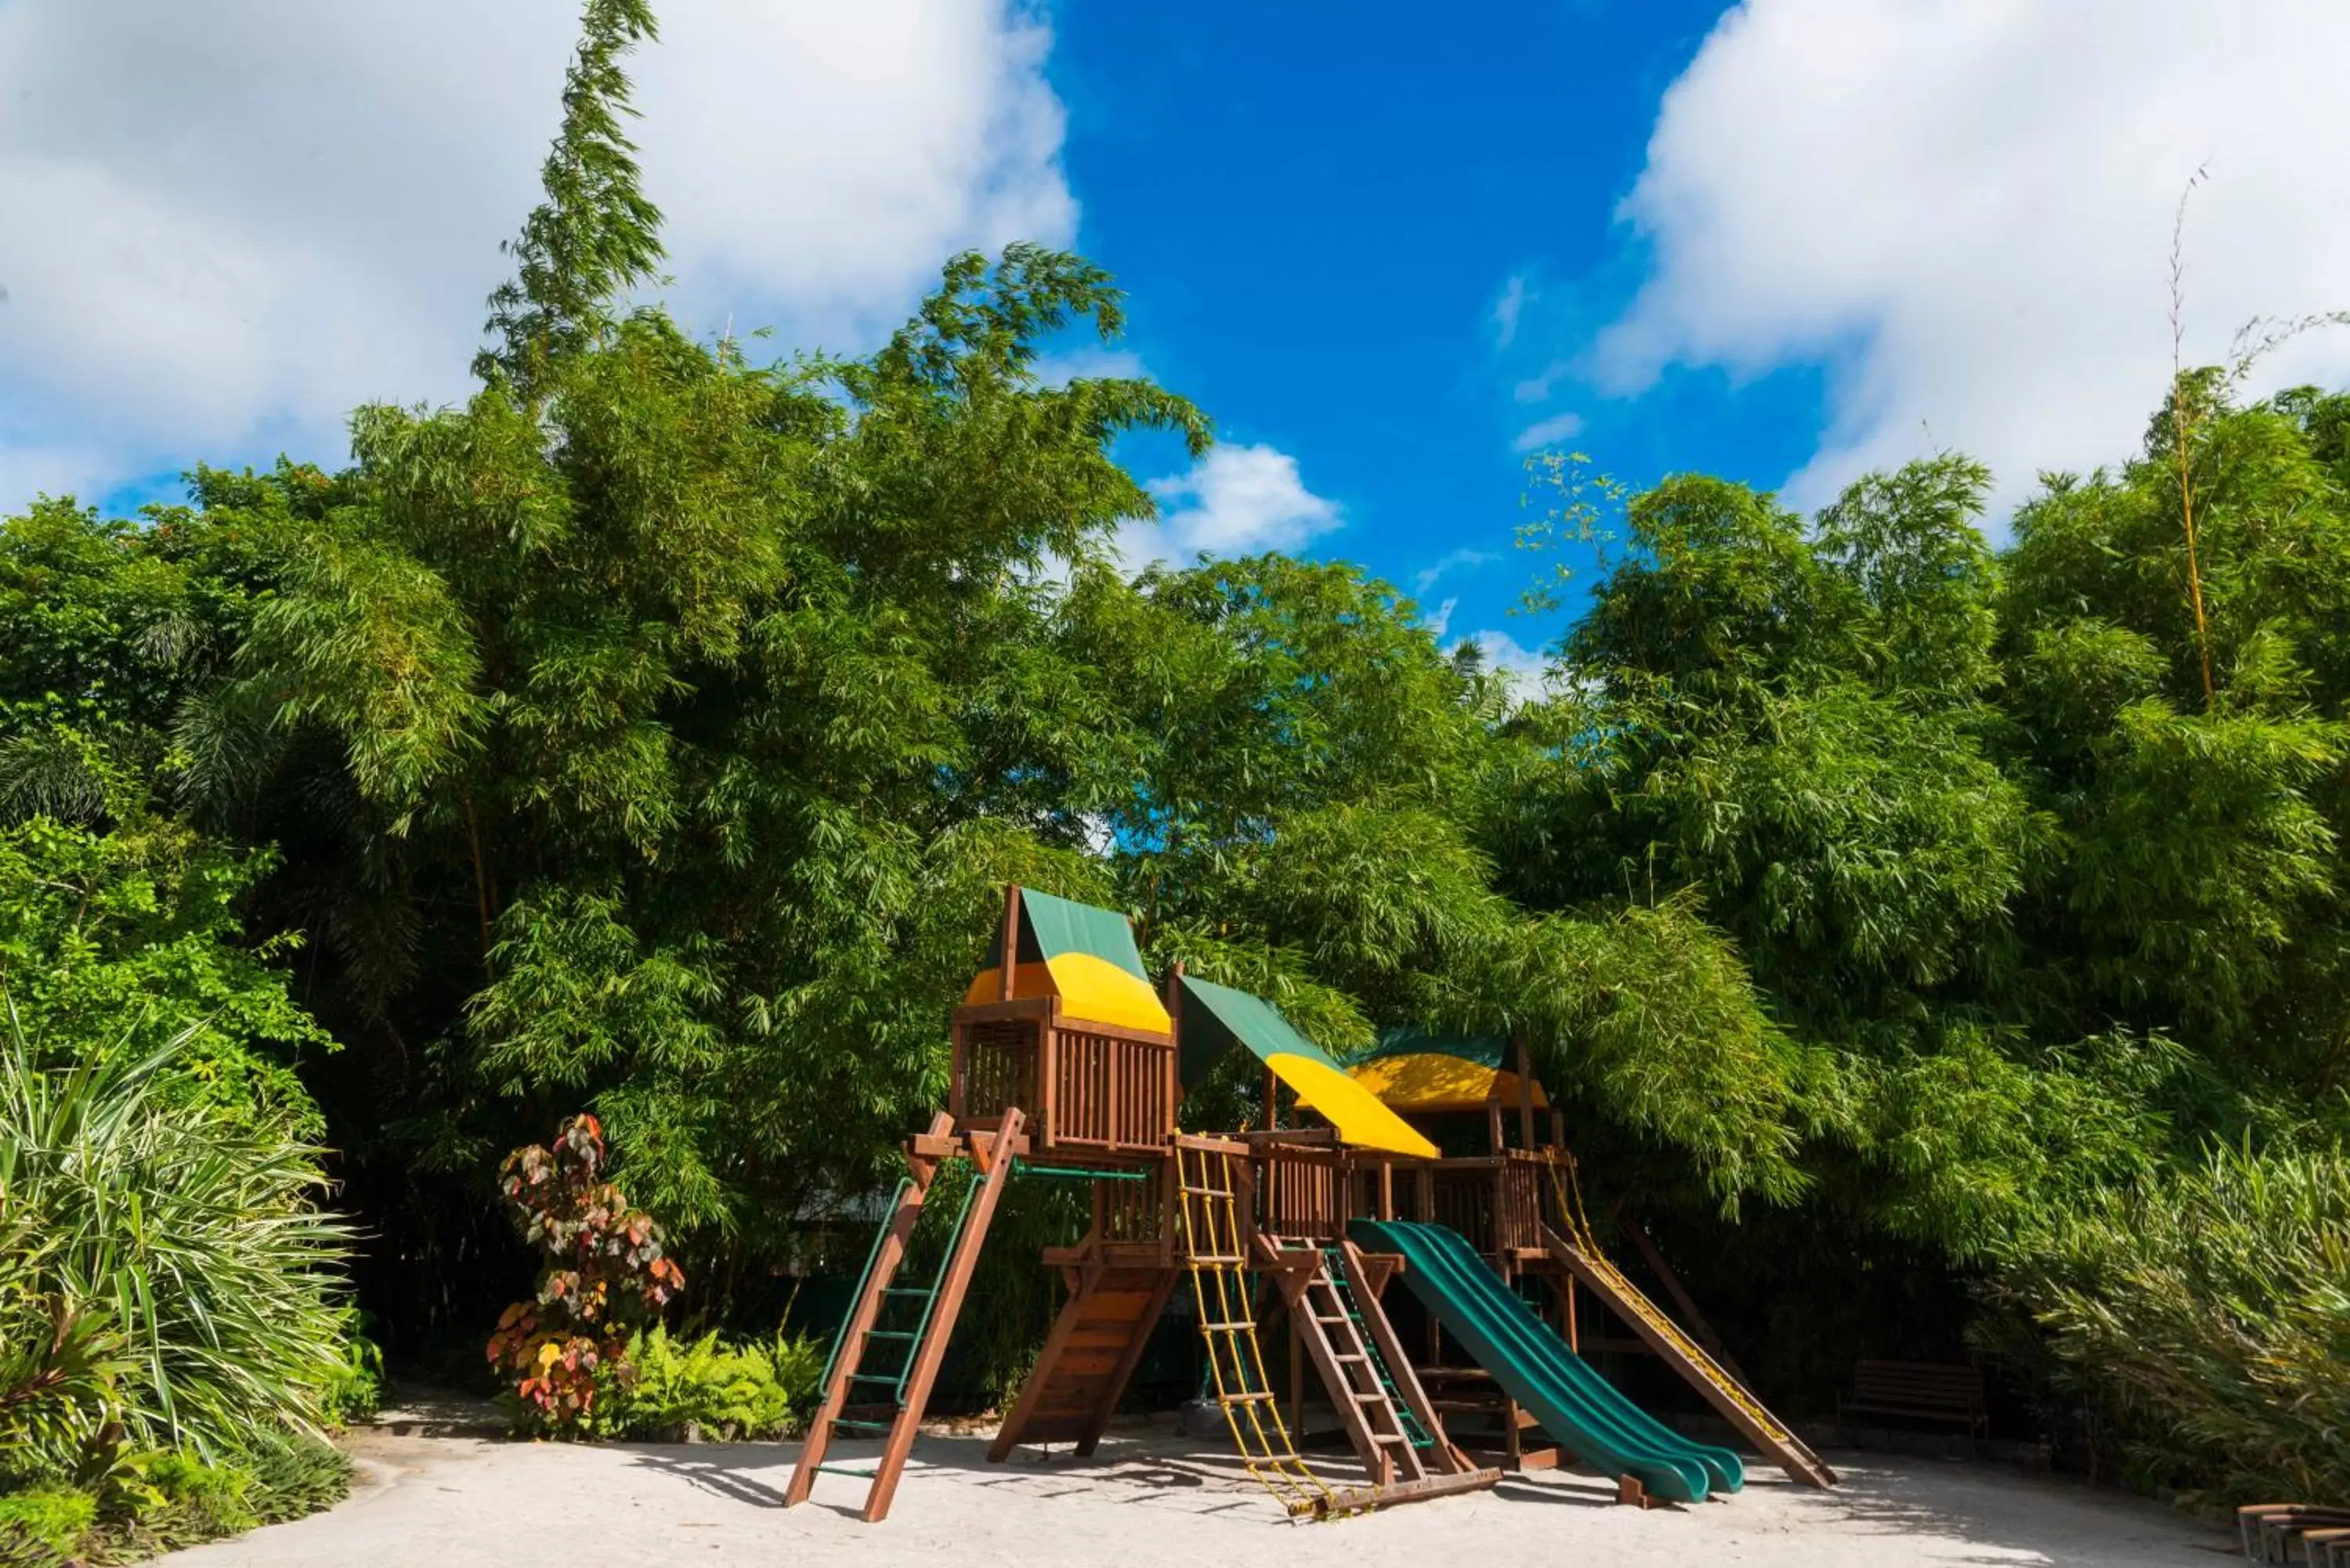 Children play ground, Children's Play Area in Jacana Amazon Wellness Resort